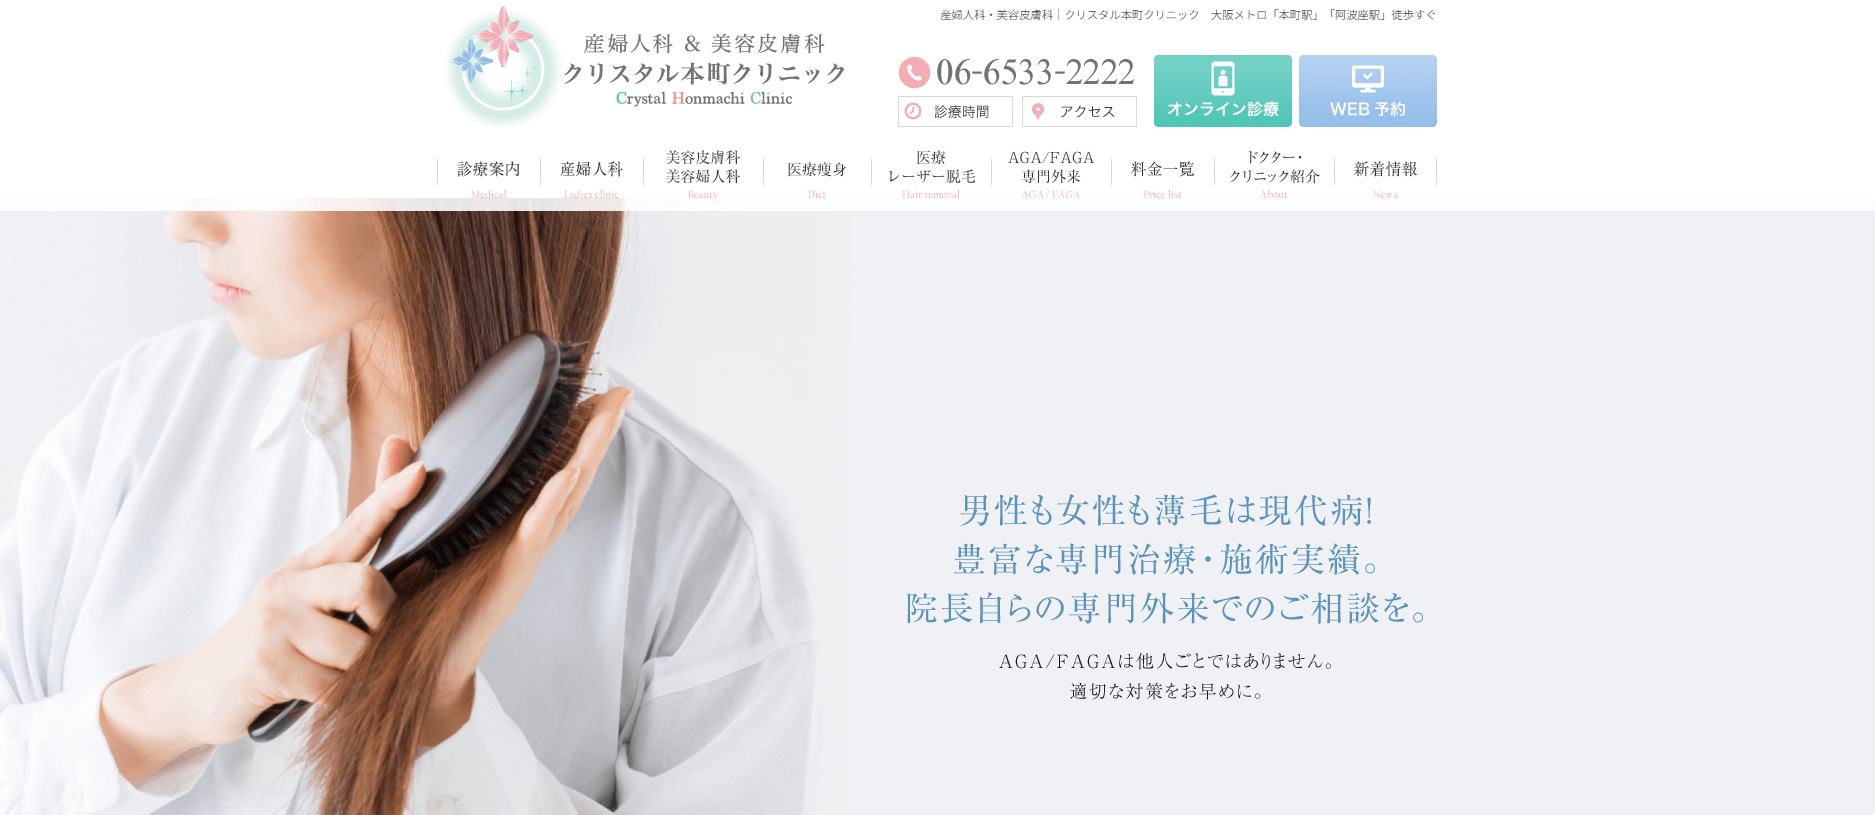 大阪府で評判のFAGA（女性薄毛治療）におすすめのクリニック10選 クリスタル本町クリニック